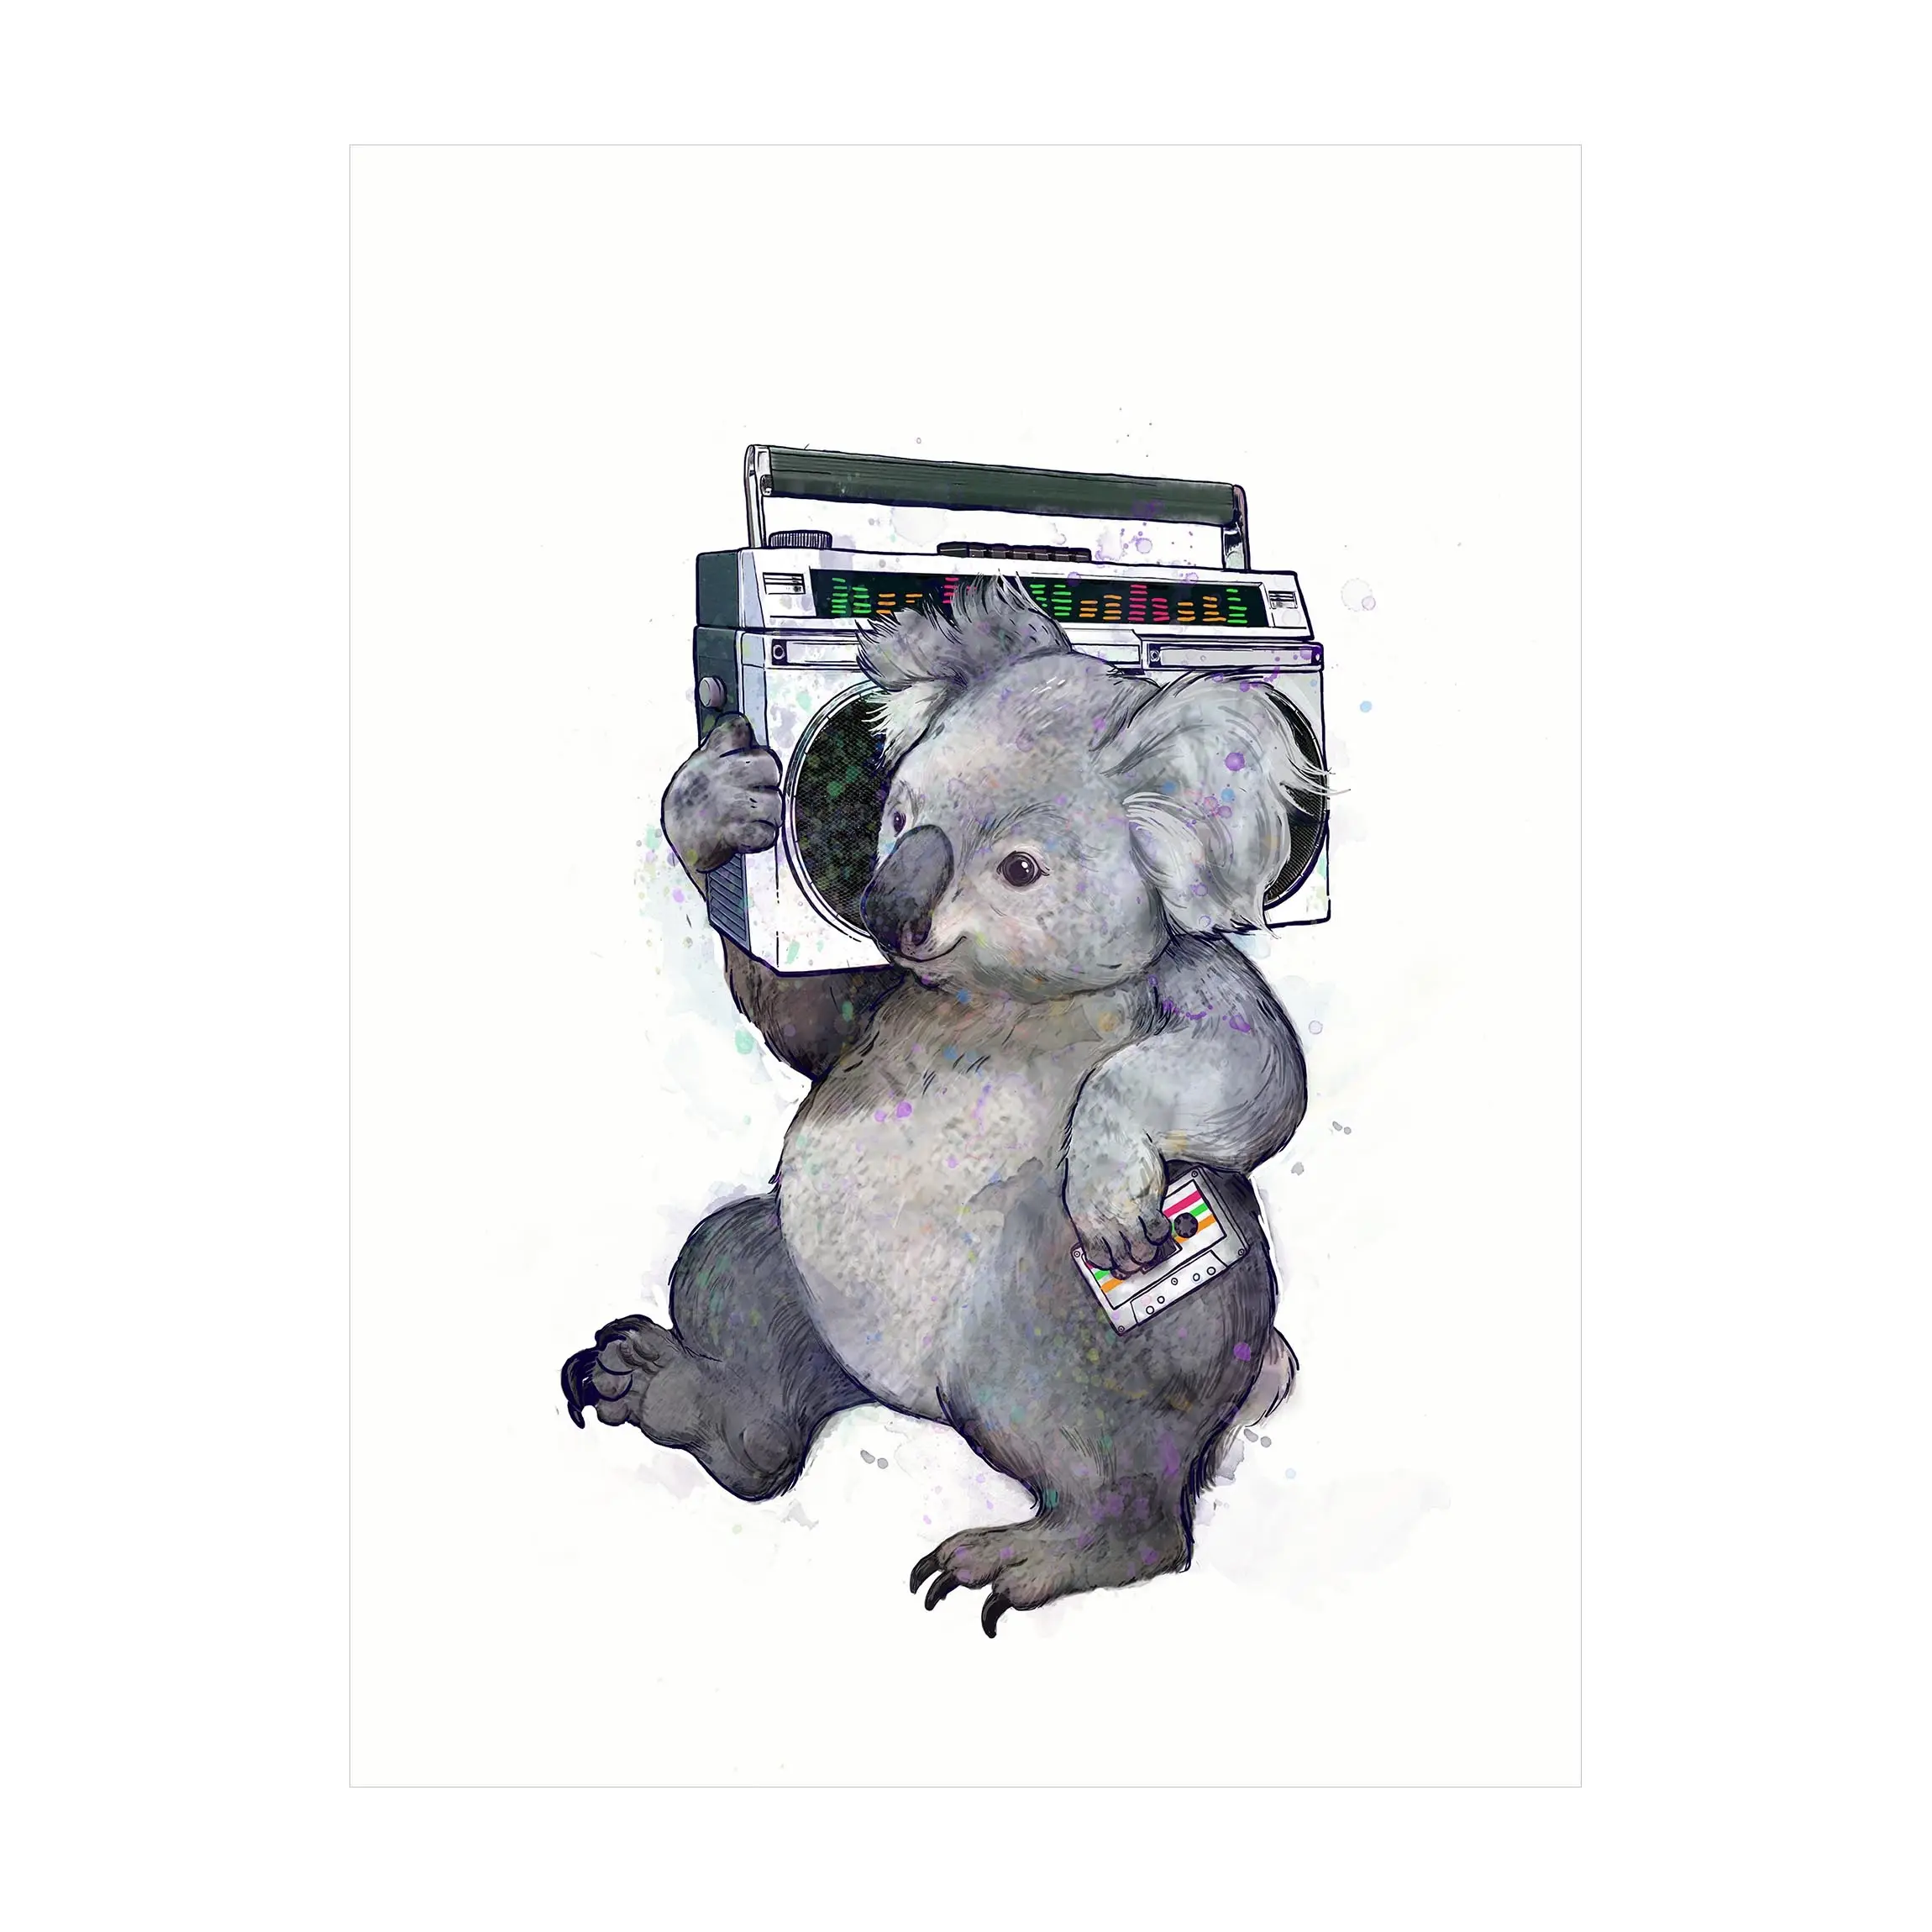 Malerei mit Radio Illustration Koala